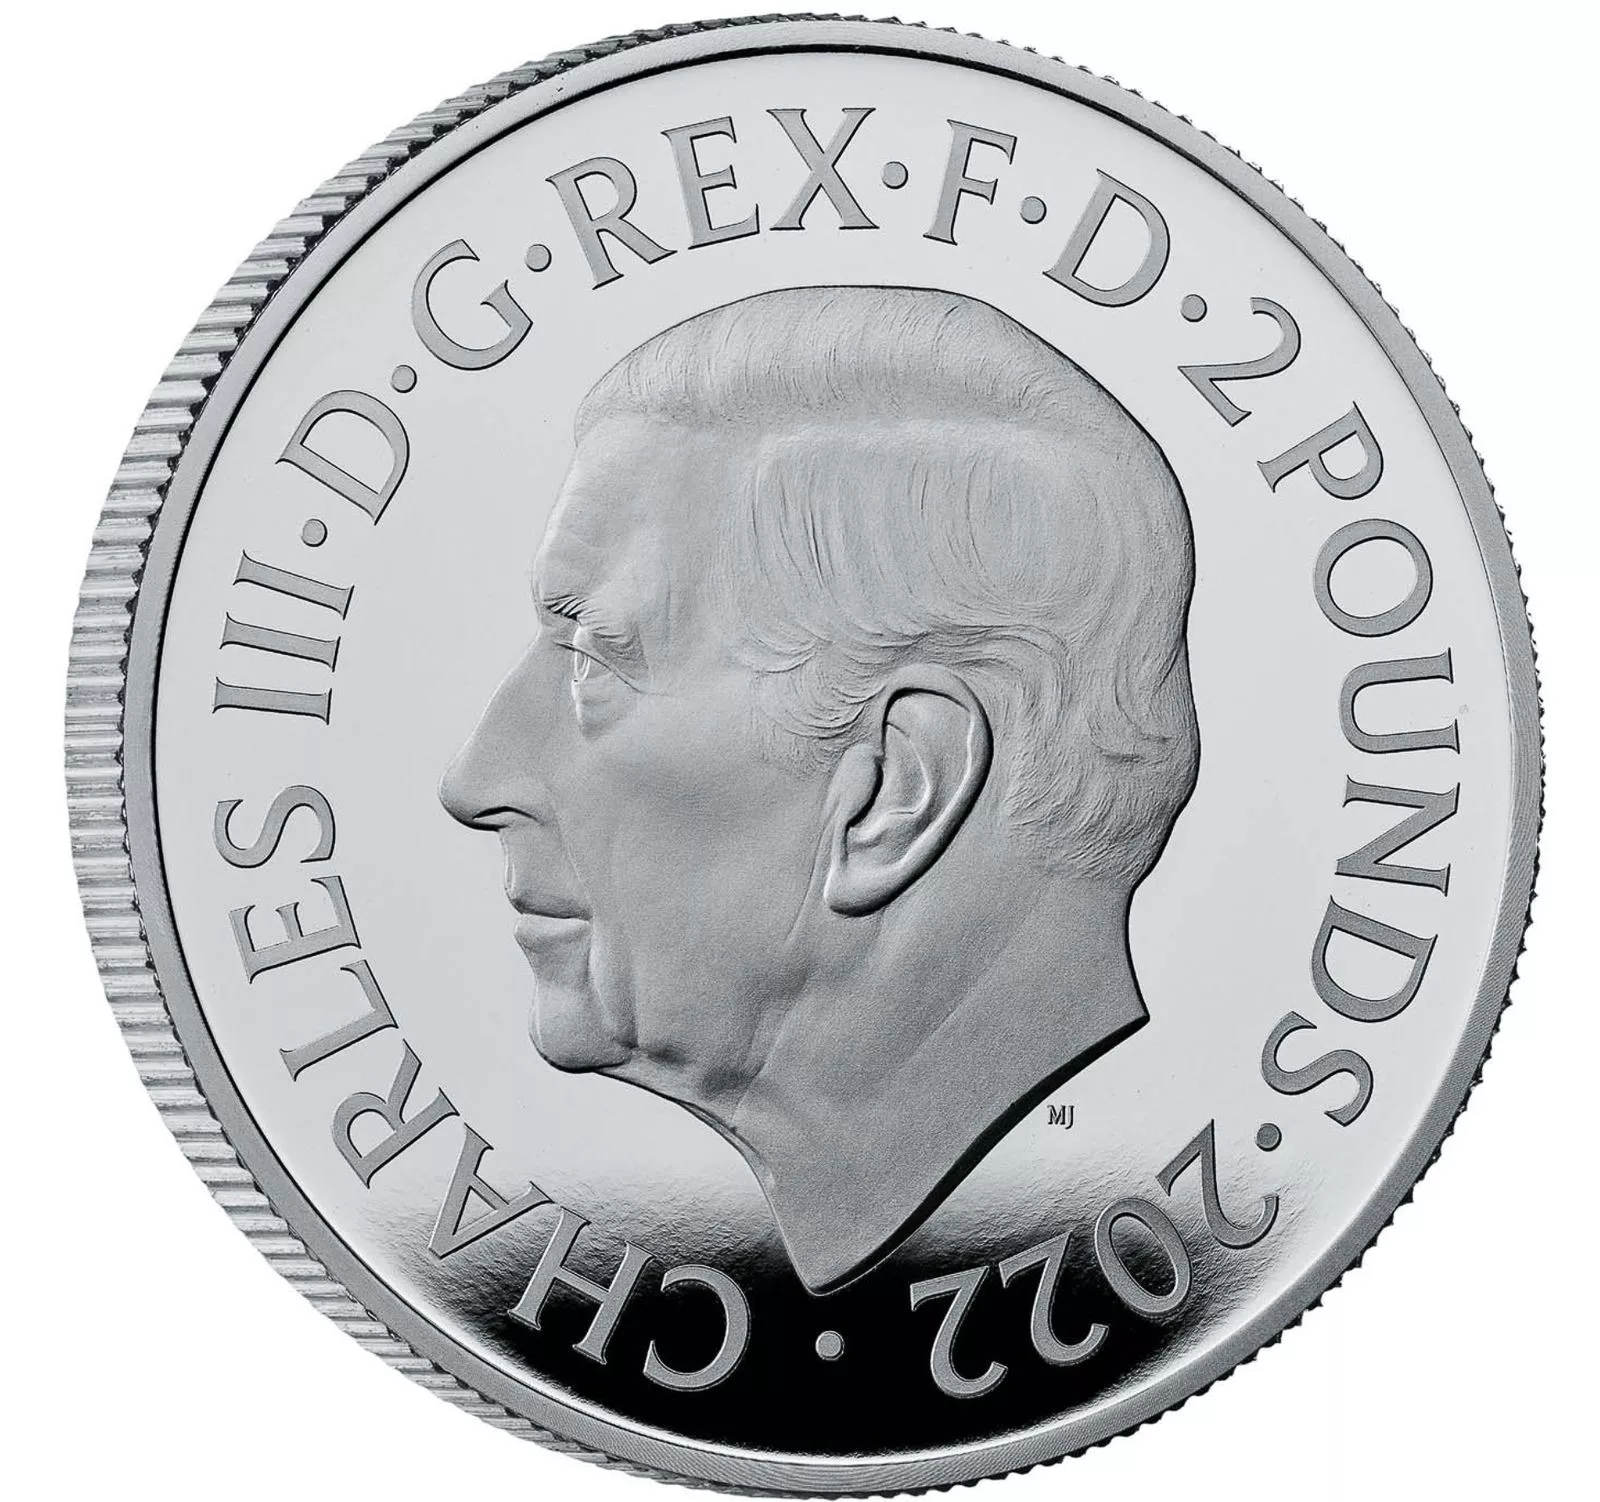 Королевский монетный двор представил новую памятную монету с портретом Карла III, фото 2